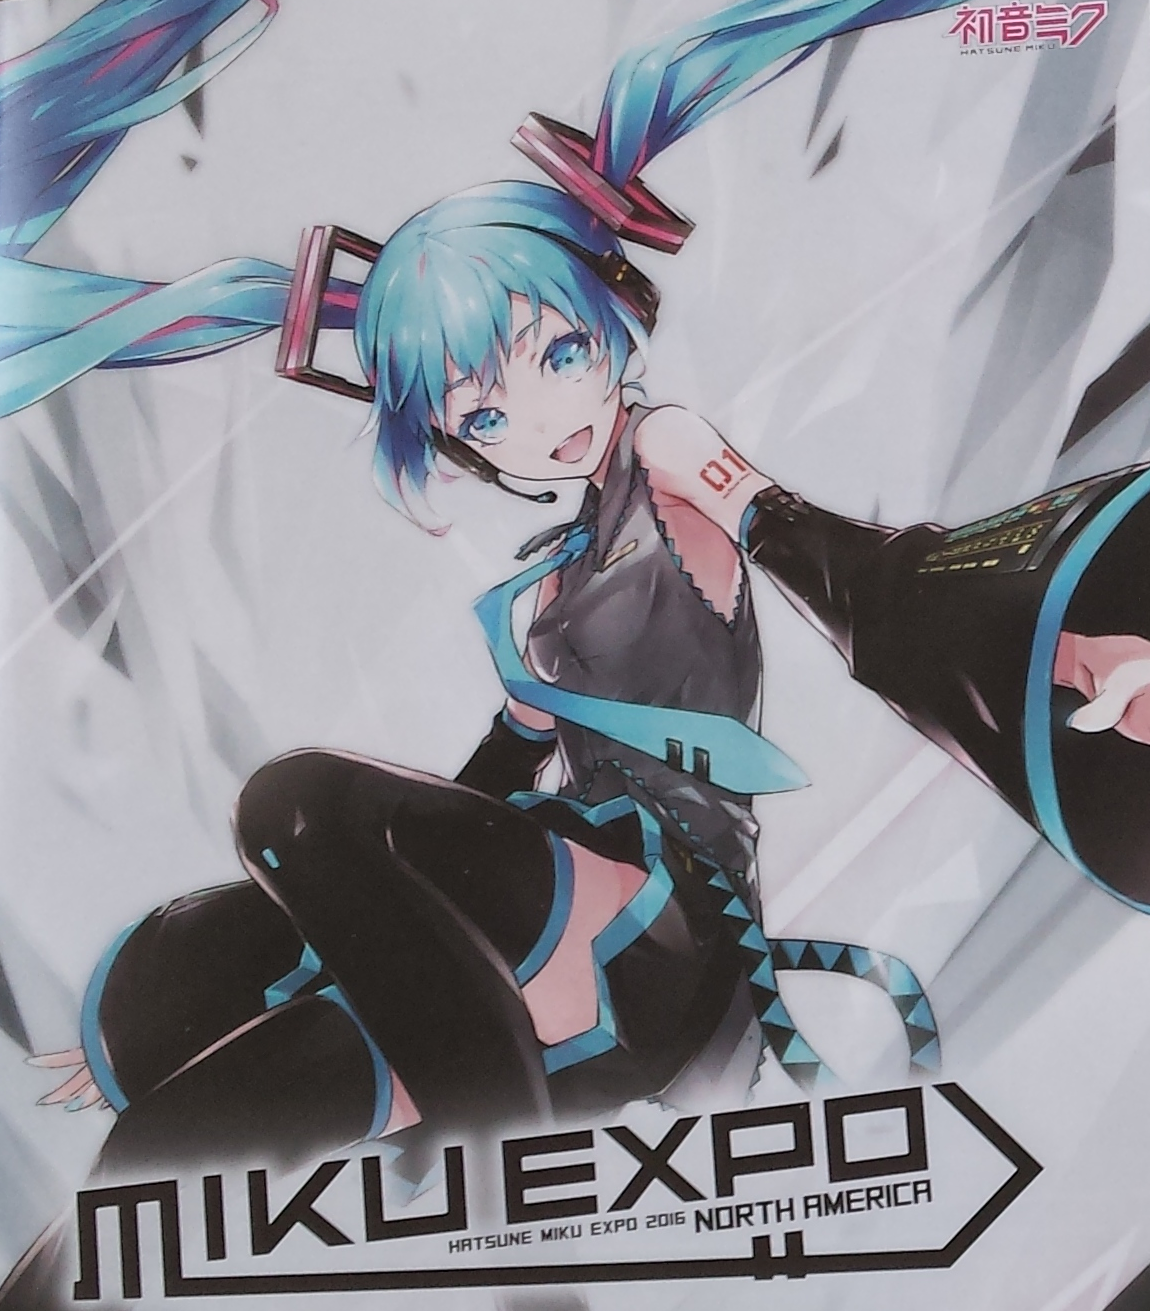 Miku expo. Хатсуне Мику Expo. Мику Хатсуне Экспо 2016. Miku Expo 2016. Miku Expo 2020.